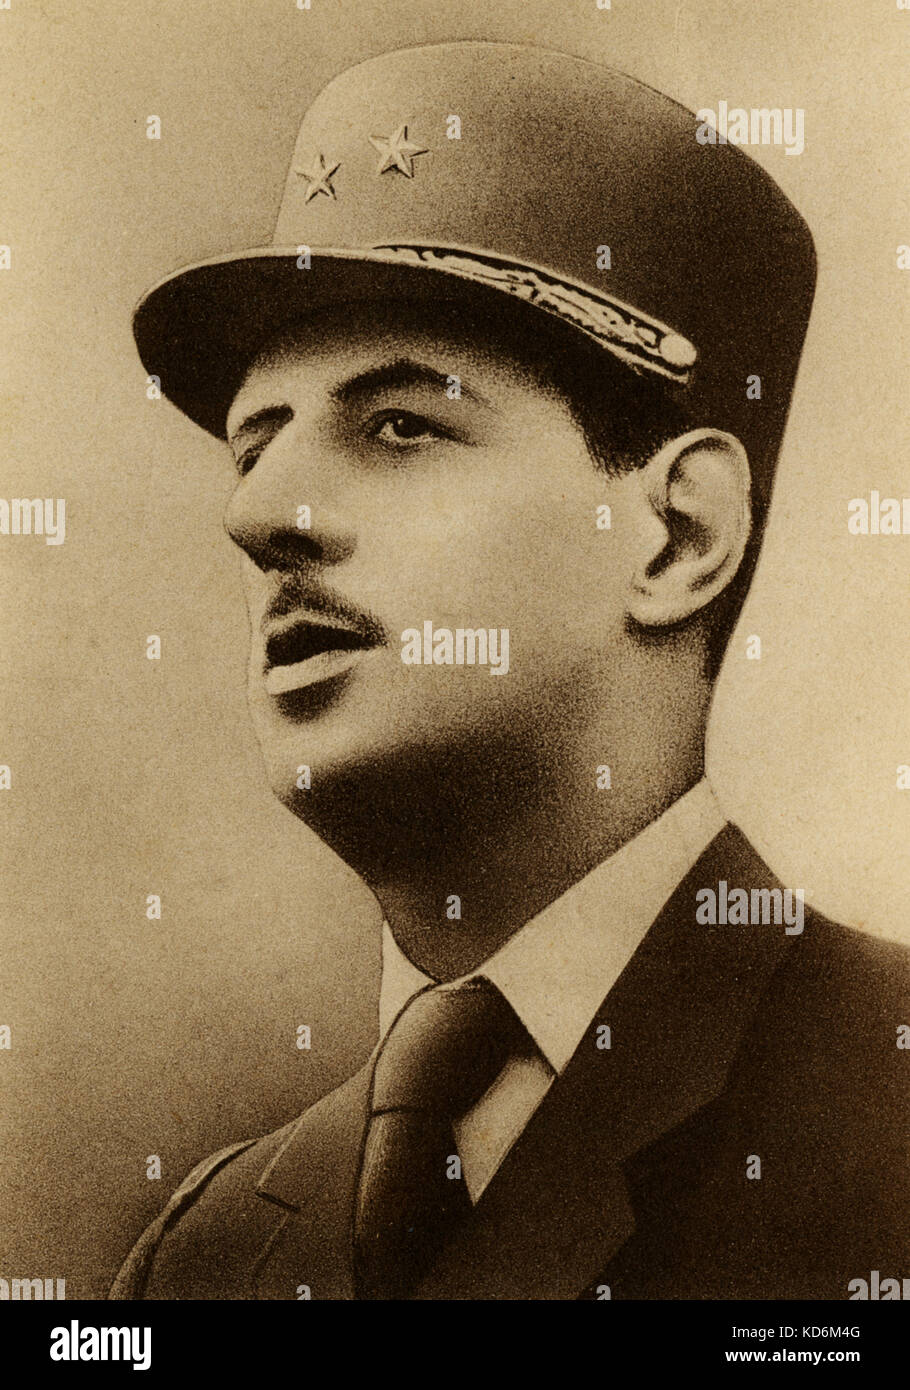 Général Charles de Gaulle, in Militäruniform. Französischer Minister des Krieges während des zweiten Weltkriegs, Präsident 1944-1946, 1890-1970 Foto-Edition, Bruxelles Stockfoto